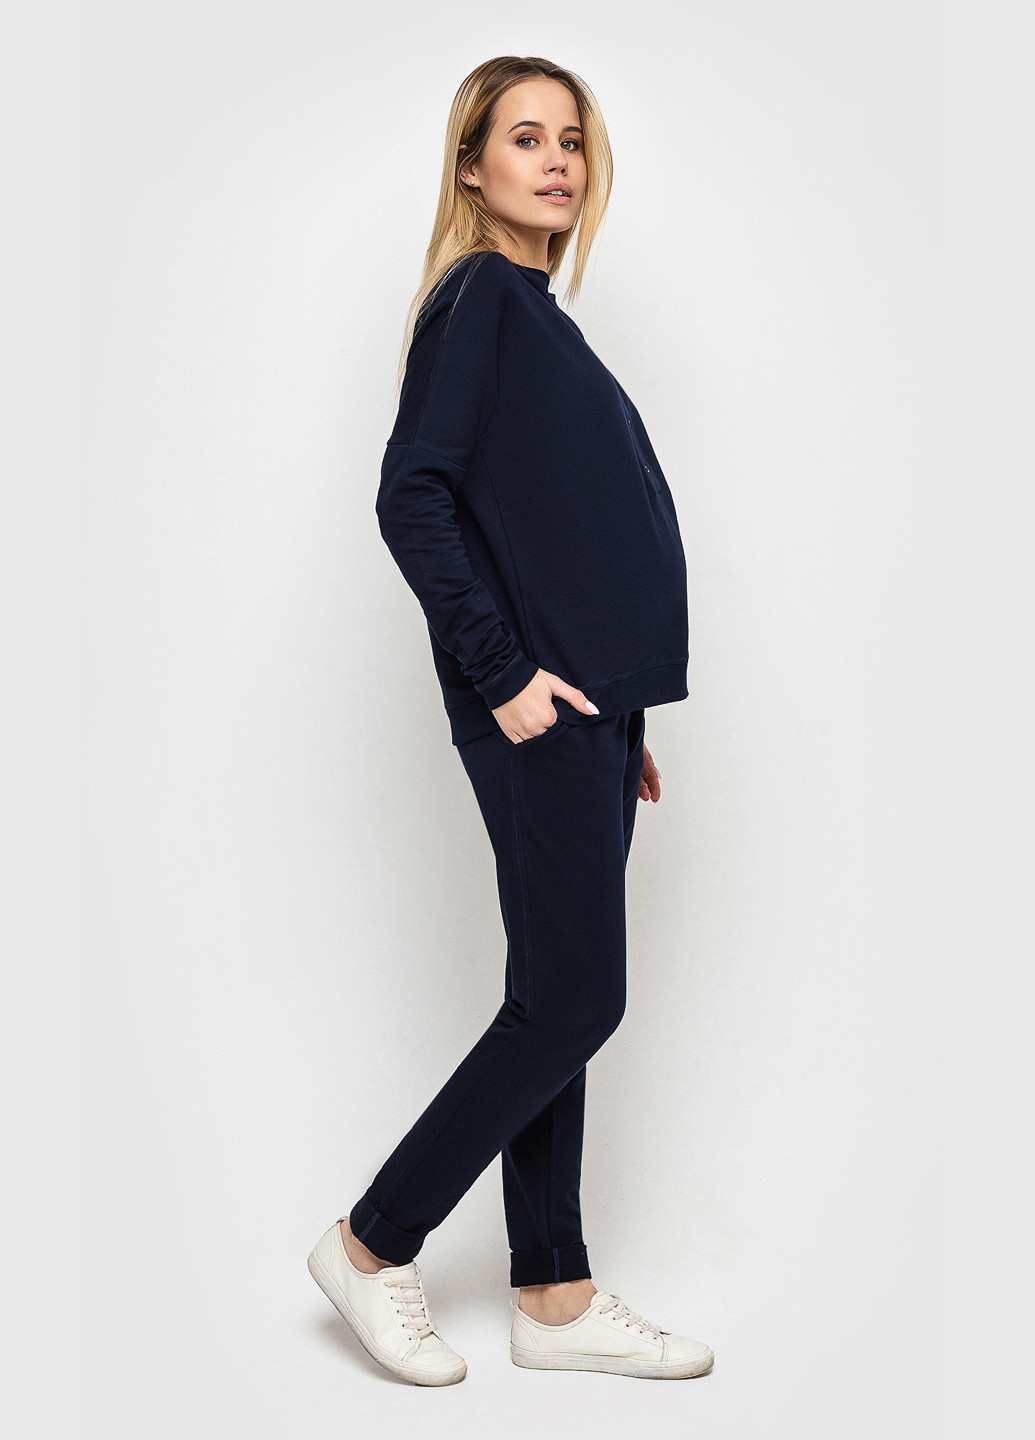 Темно-синий демисезонный джемпер на кнопках для беременных и кормящих мам темно-синий джемпер Koko boutique